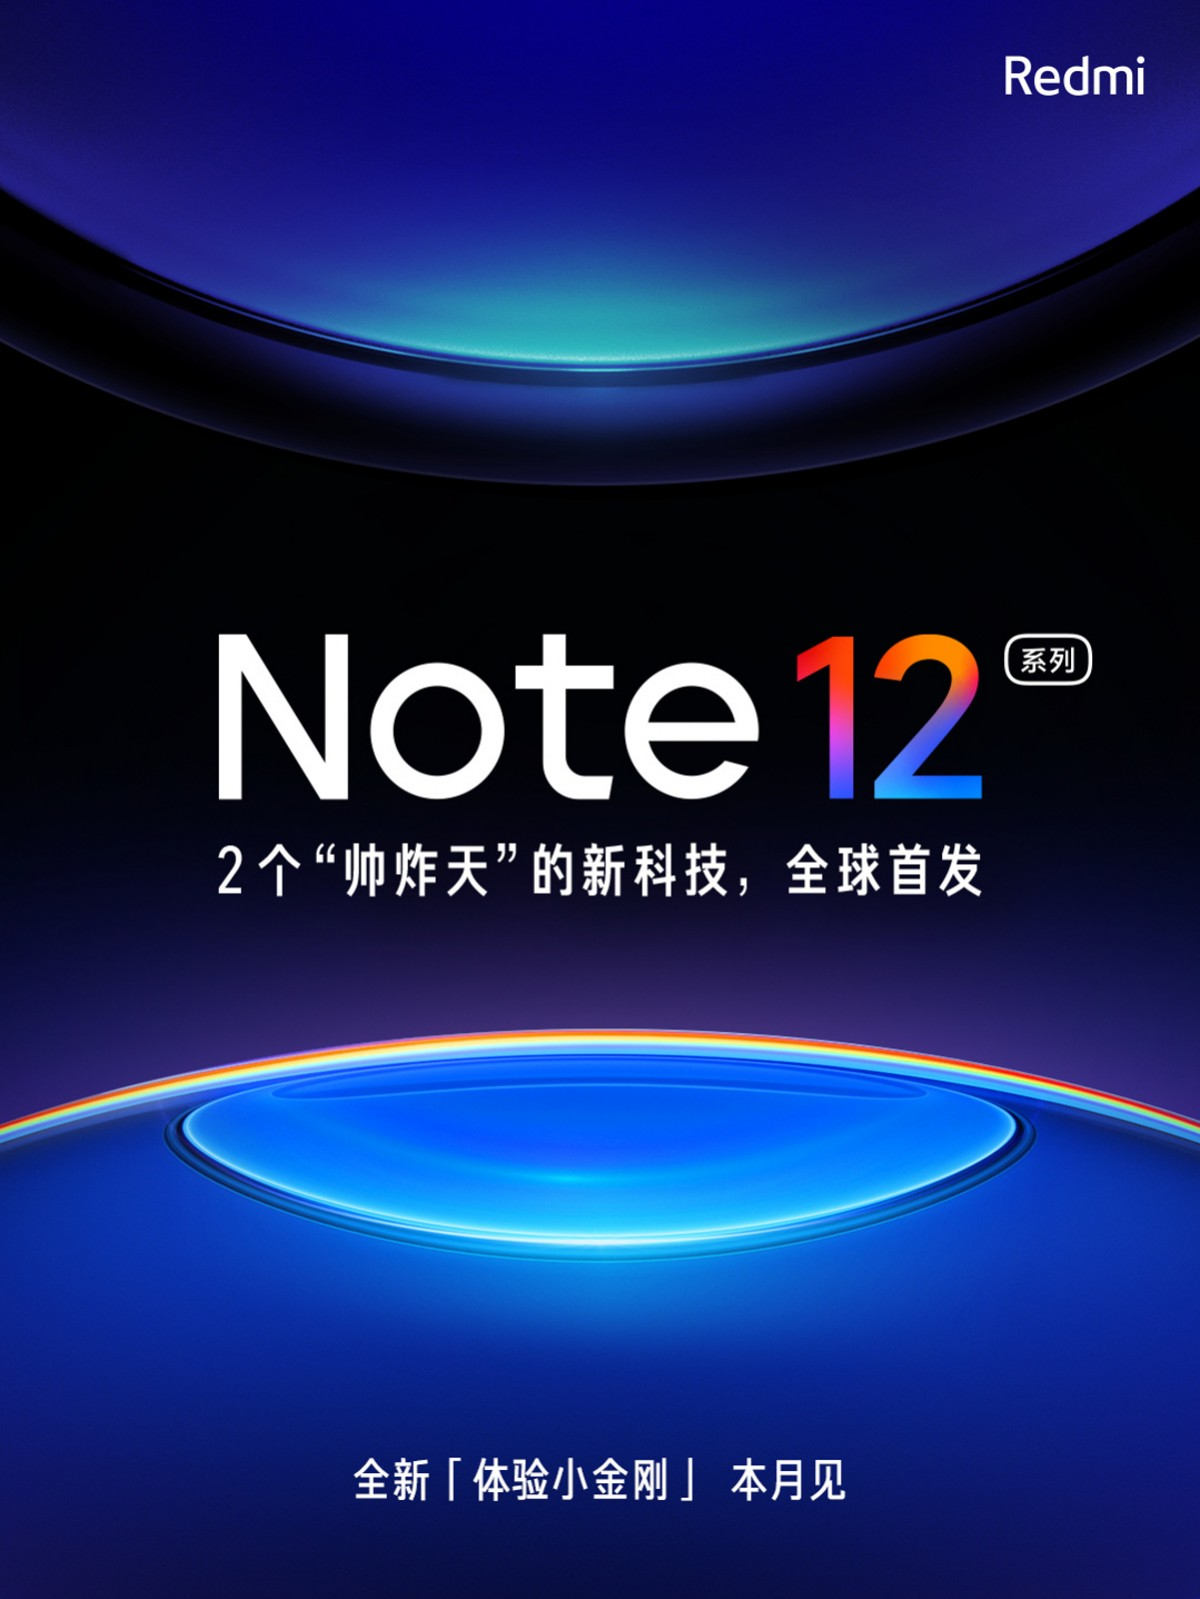 Xiaomi zapowiada premierę telefonów Redmi Note 12